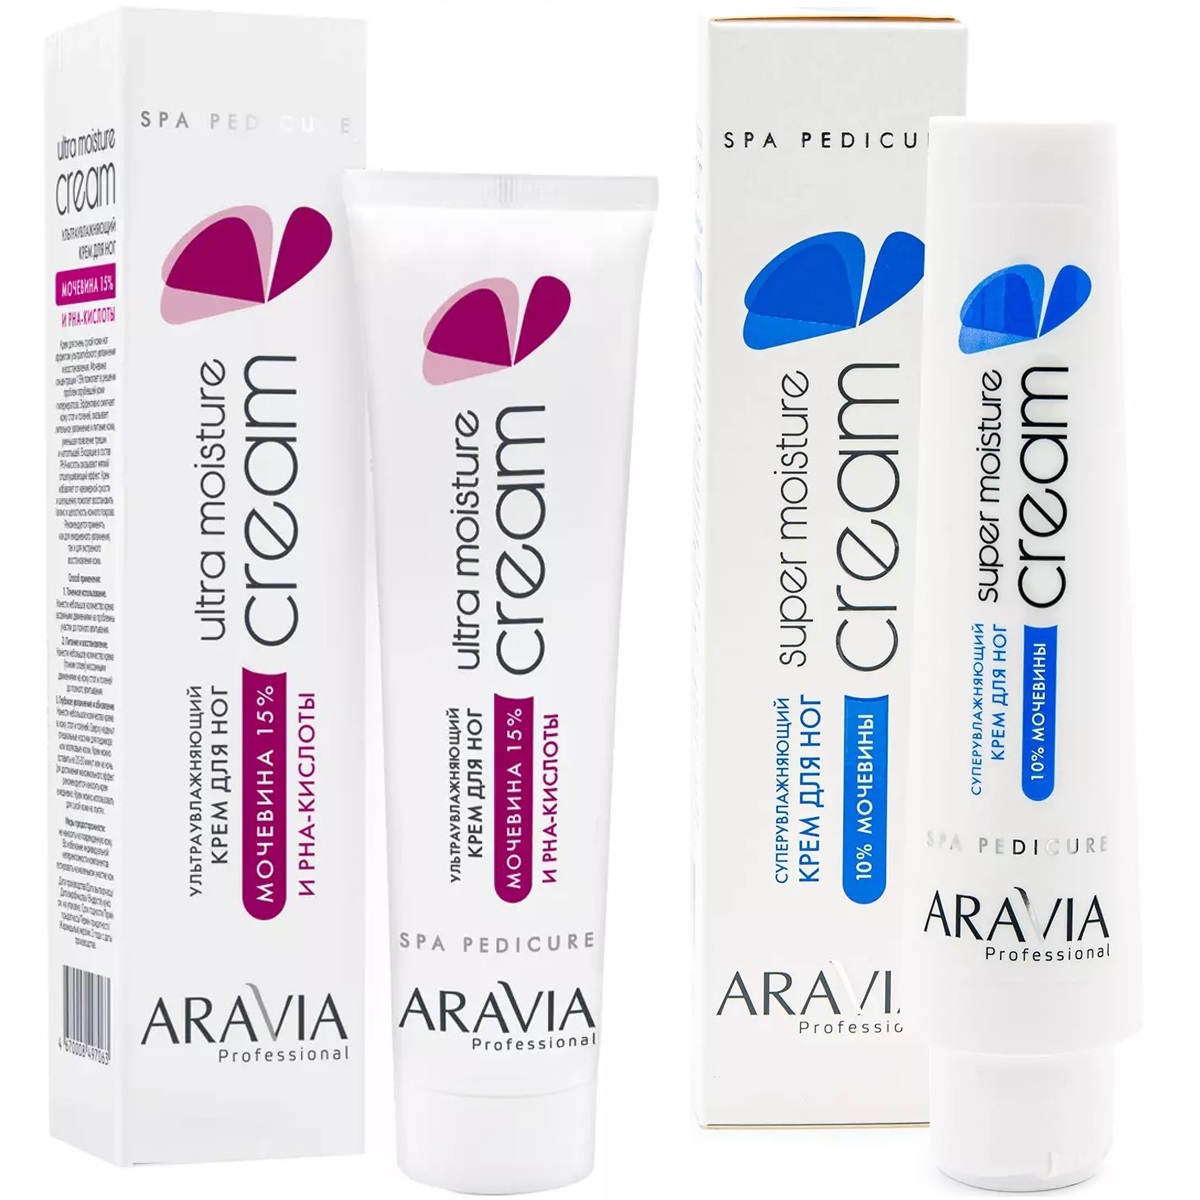 Aravia Professional Набор для ухода за кожей ног: крем ультраувлажняющий, 100 мл + суперувлажняющий крем, 100 мл (Aravia Professional, SPA педикюр) lure крем для ног витаминный с мочевиной 2 штуки по 75 мл